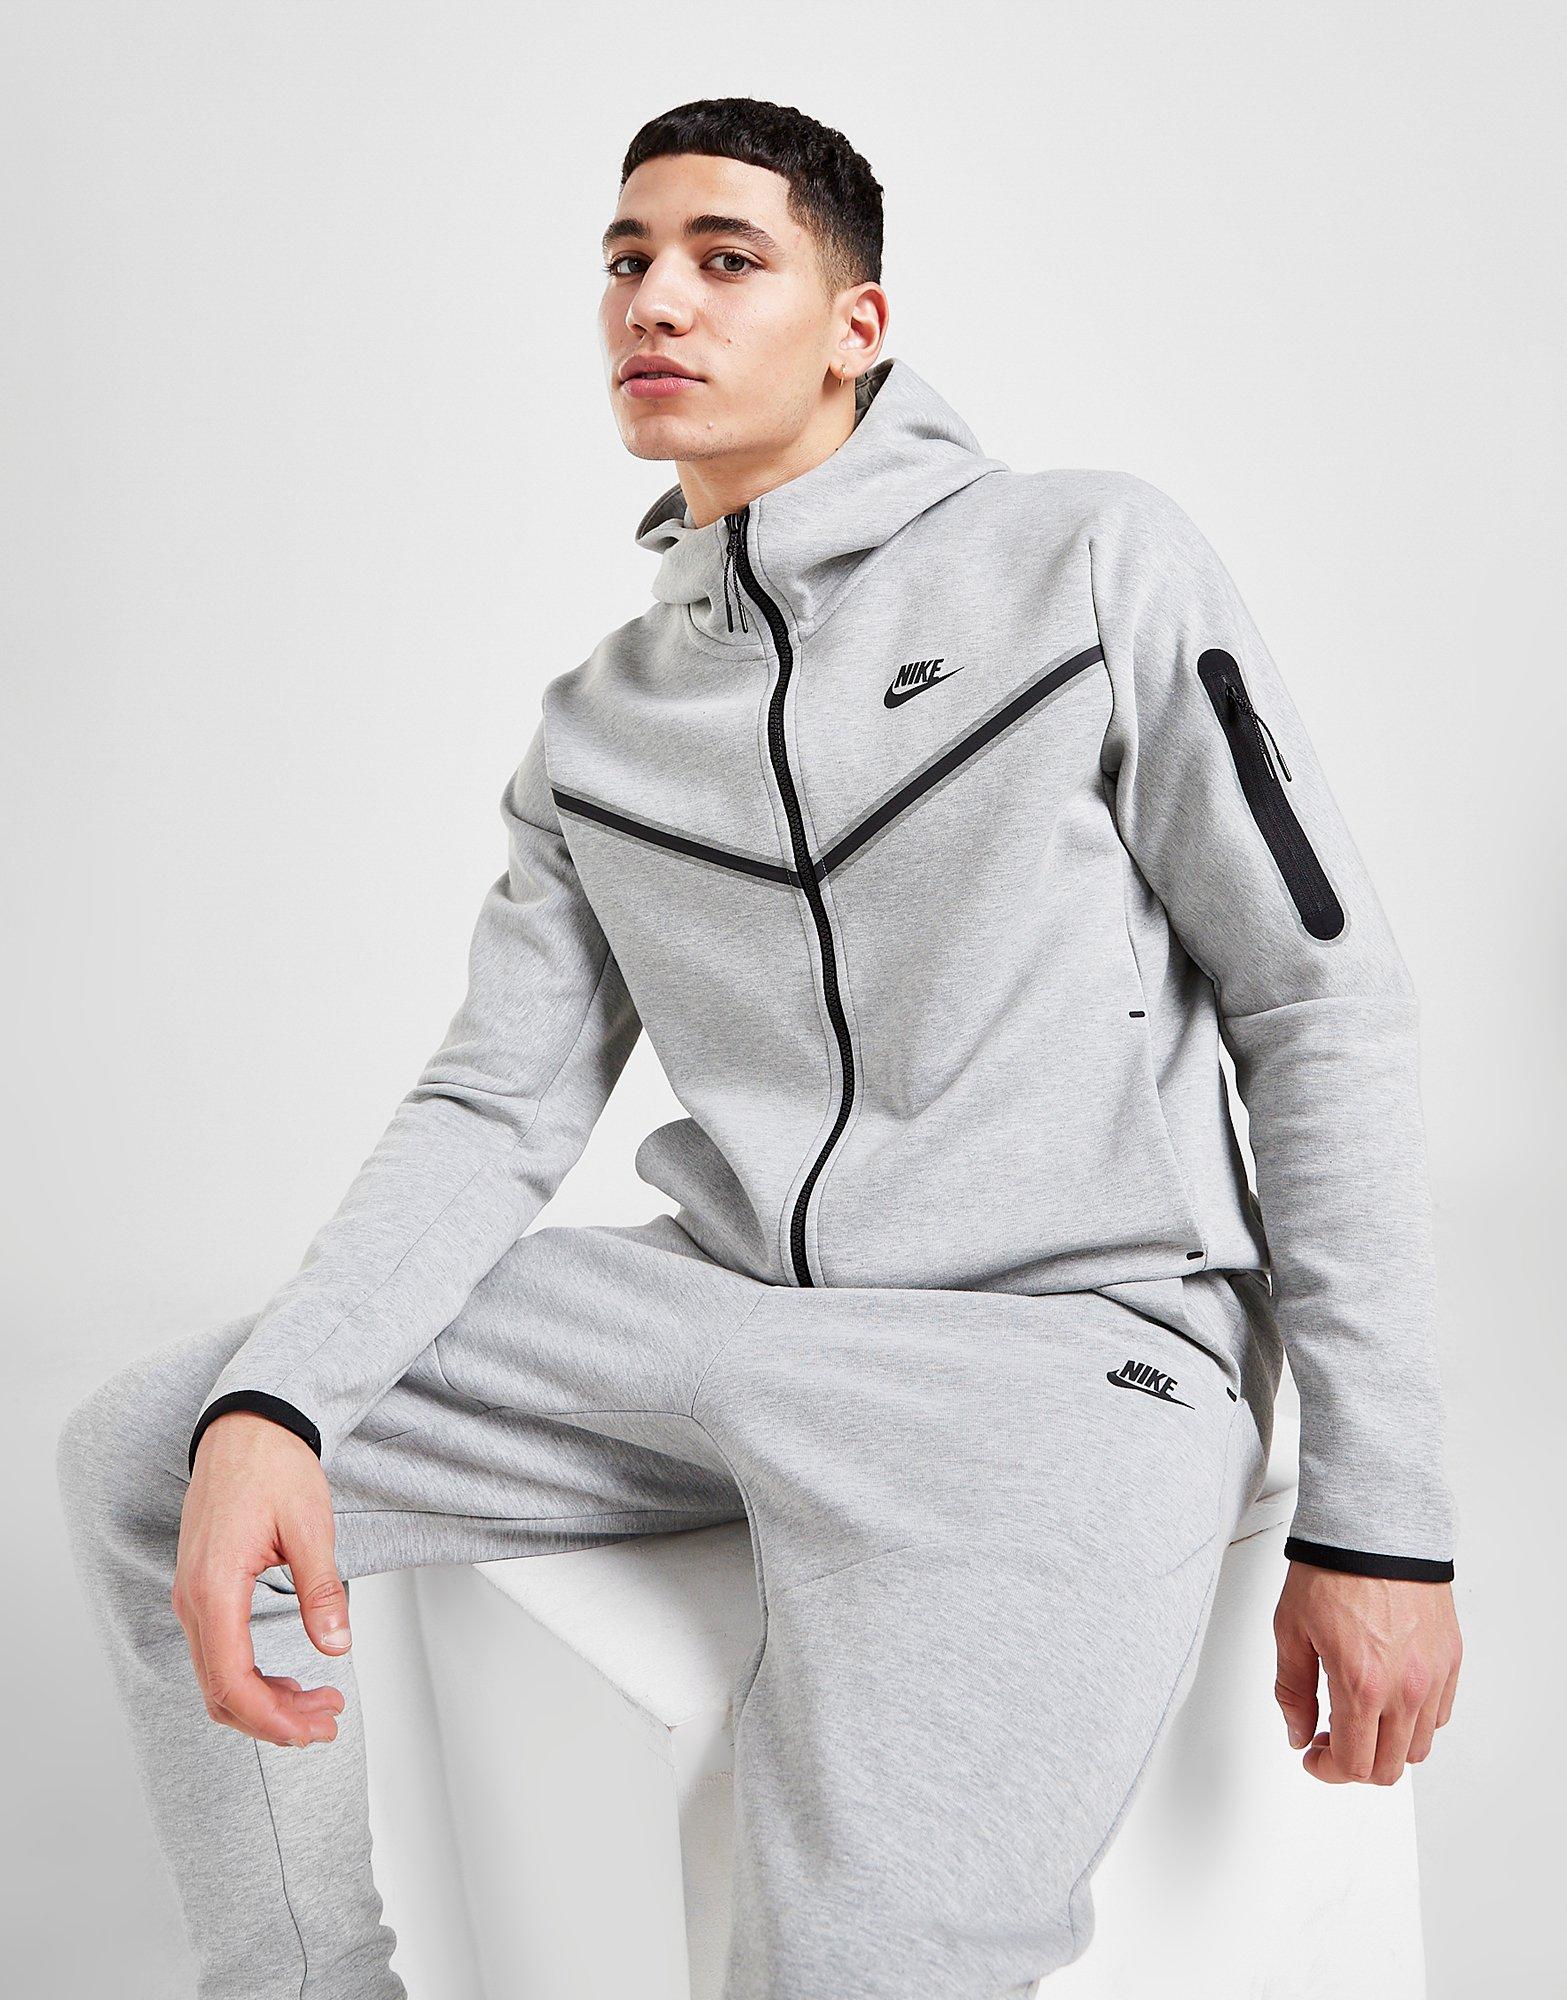 Nike Tech Fleece Full-zip Jacket In Gray For Men Lyst | vlr.eng.br